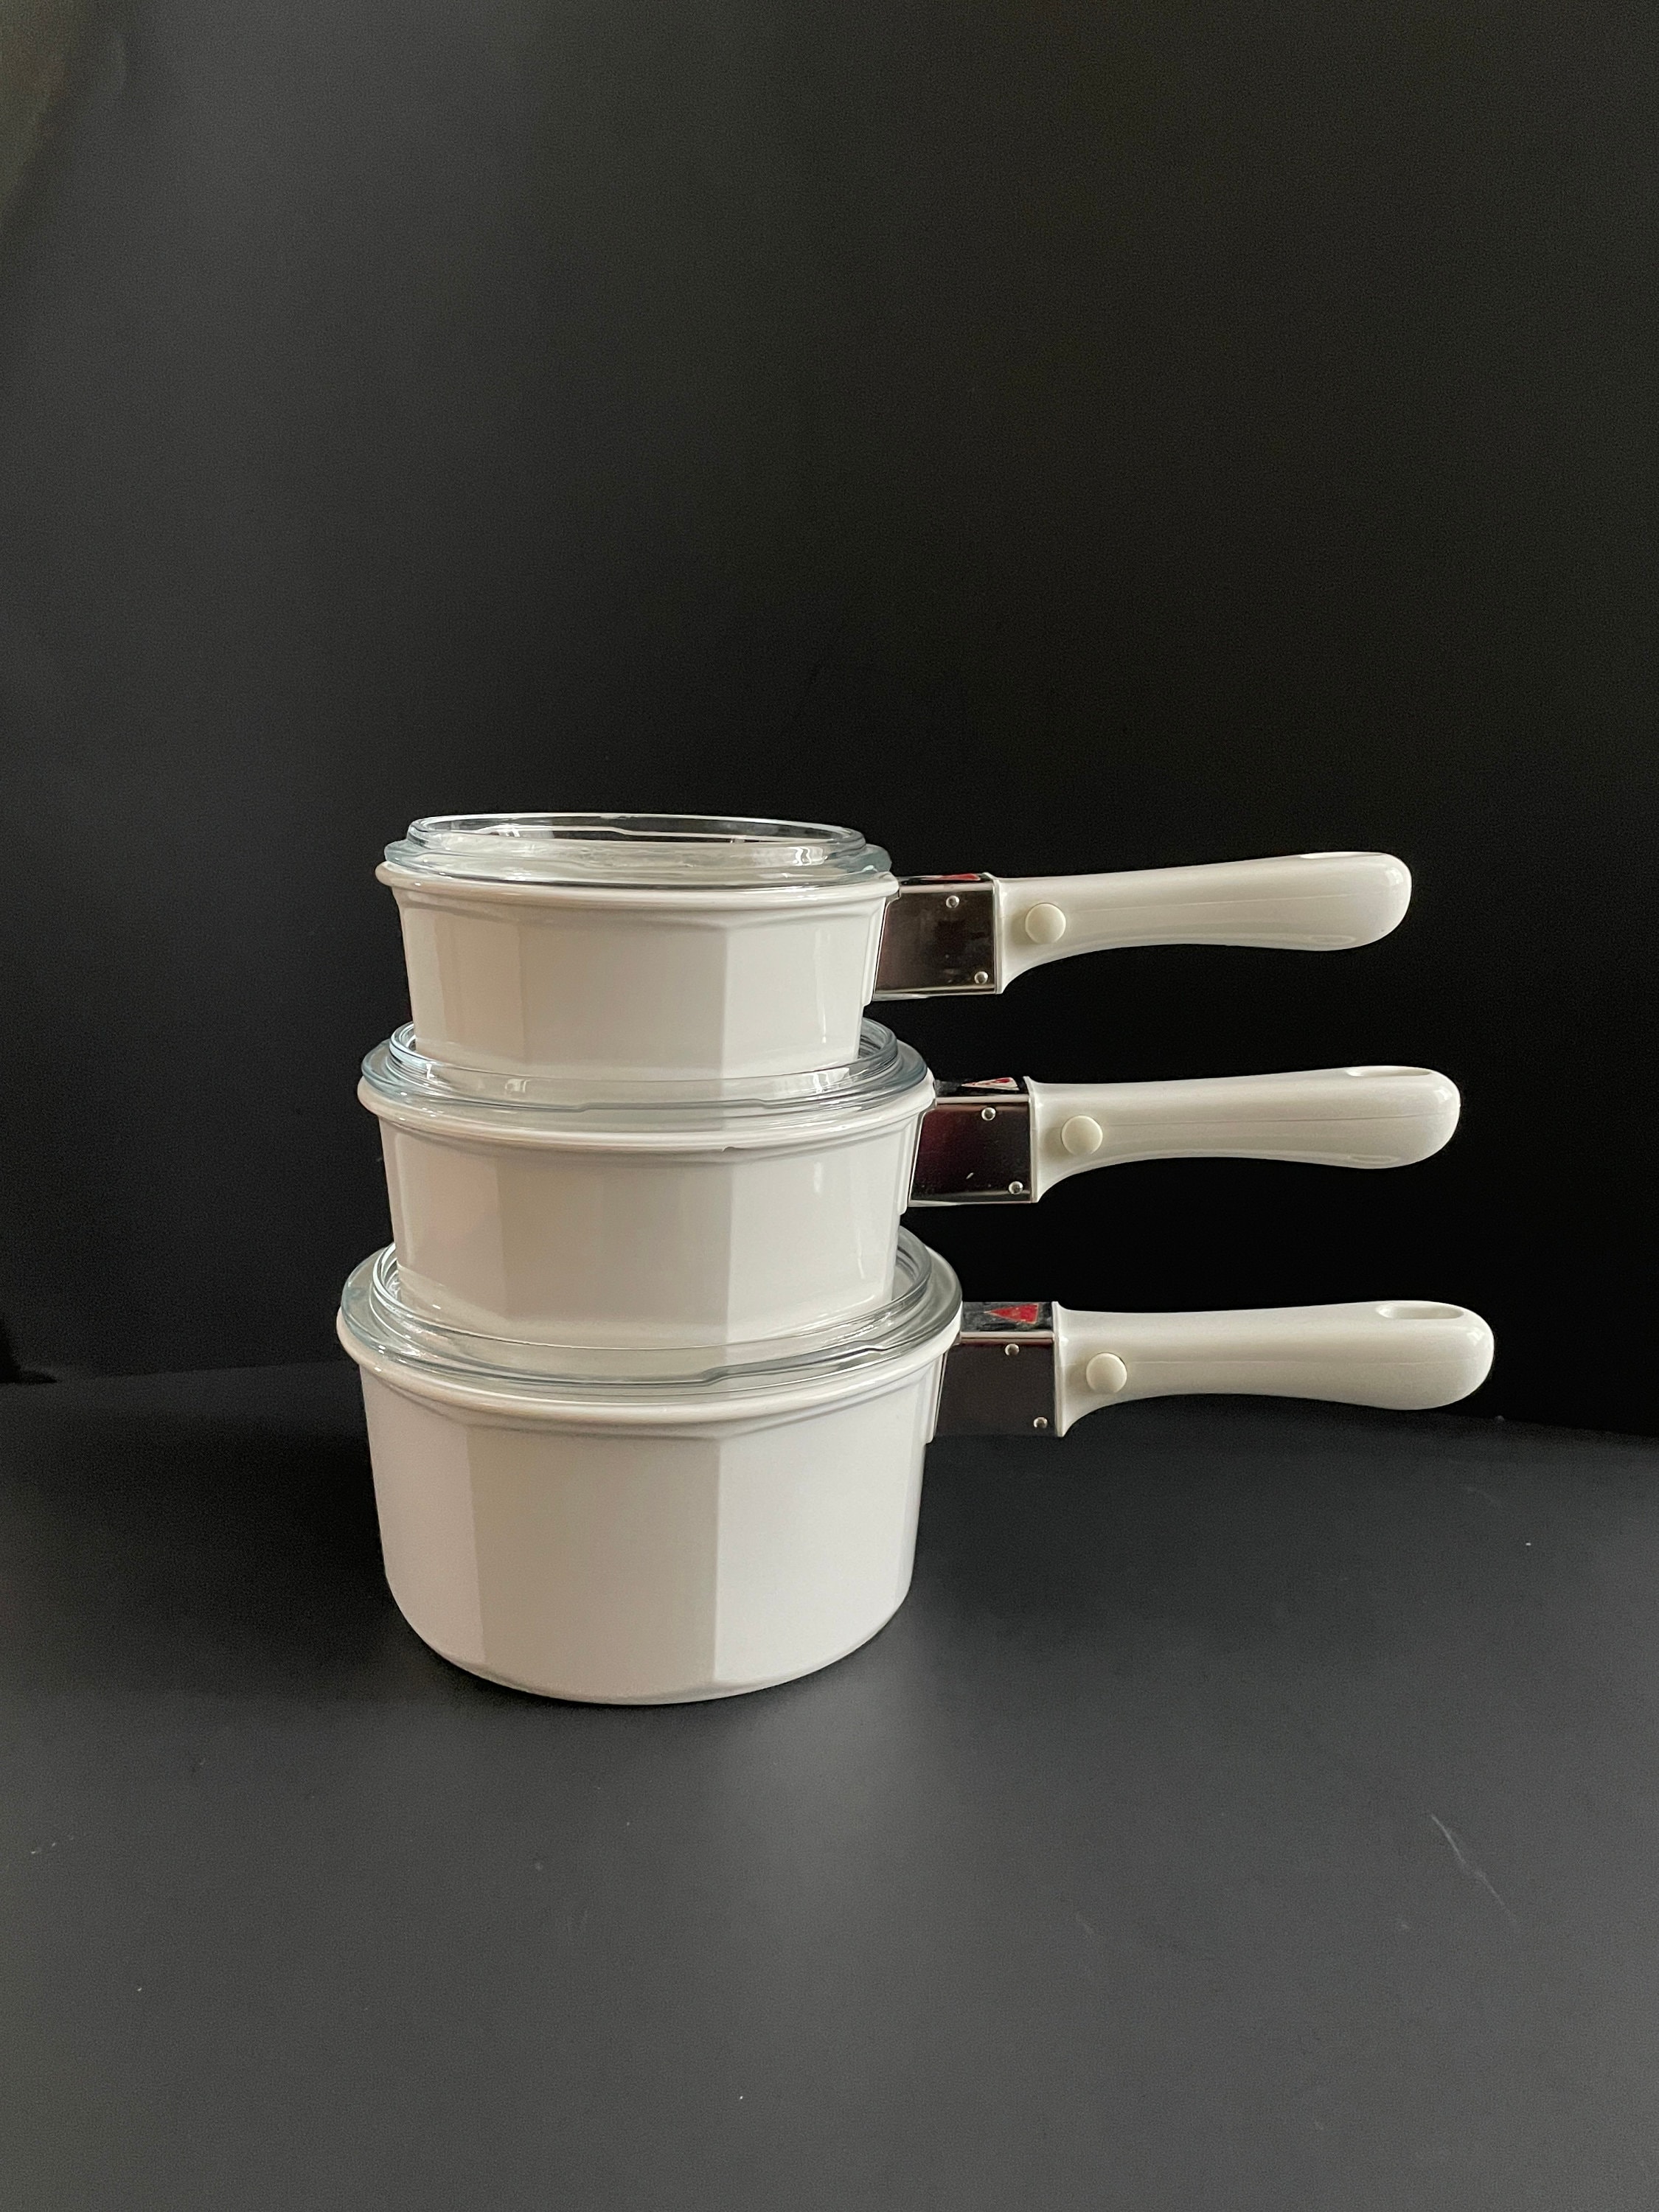 Steel Detachable Handle Pots and Pans - 3 Piece White Ceramic